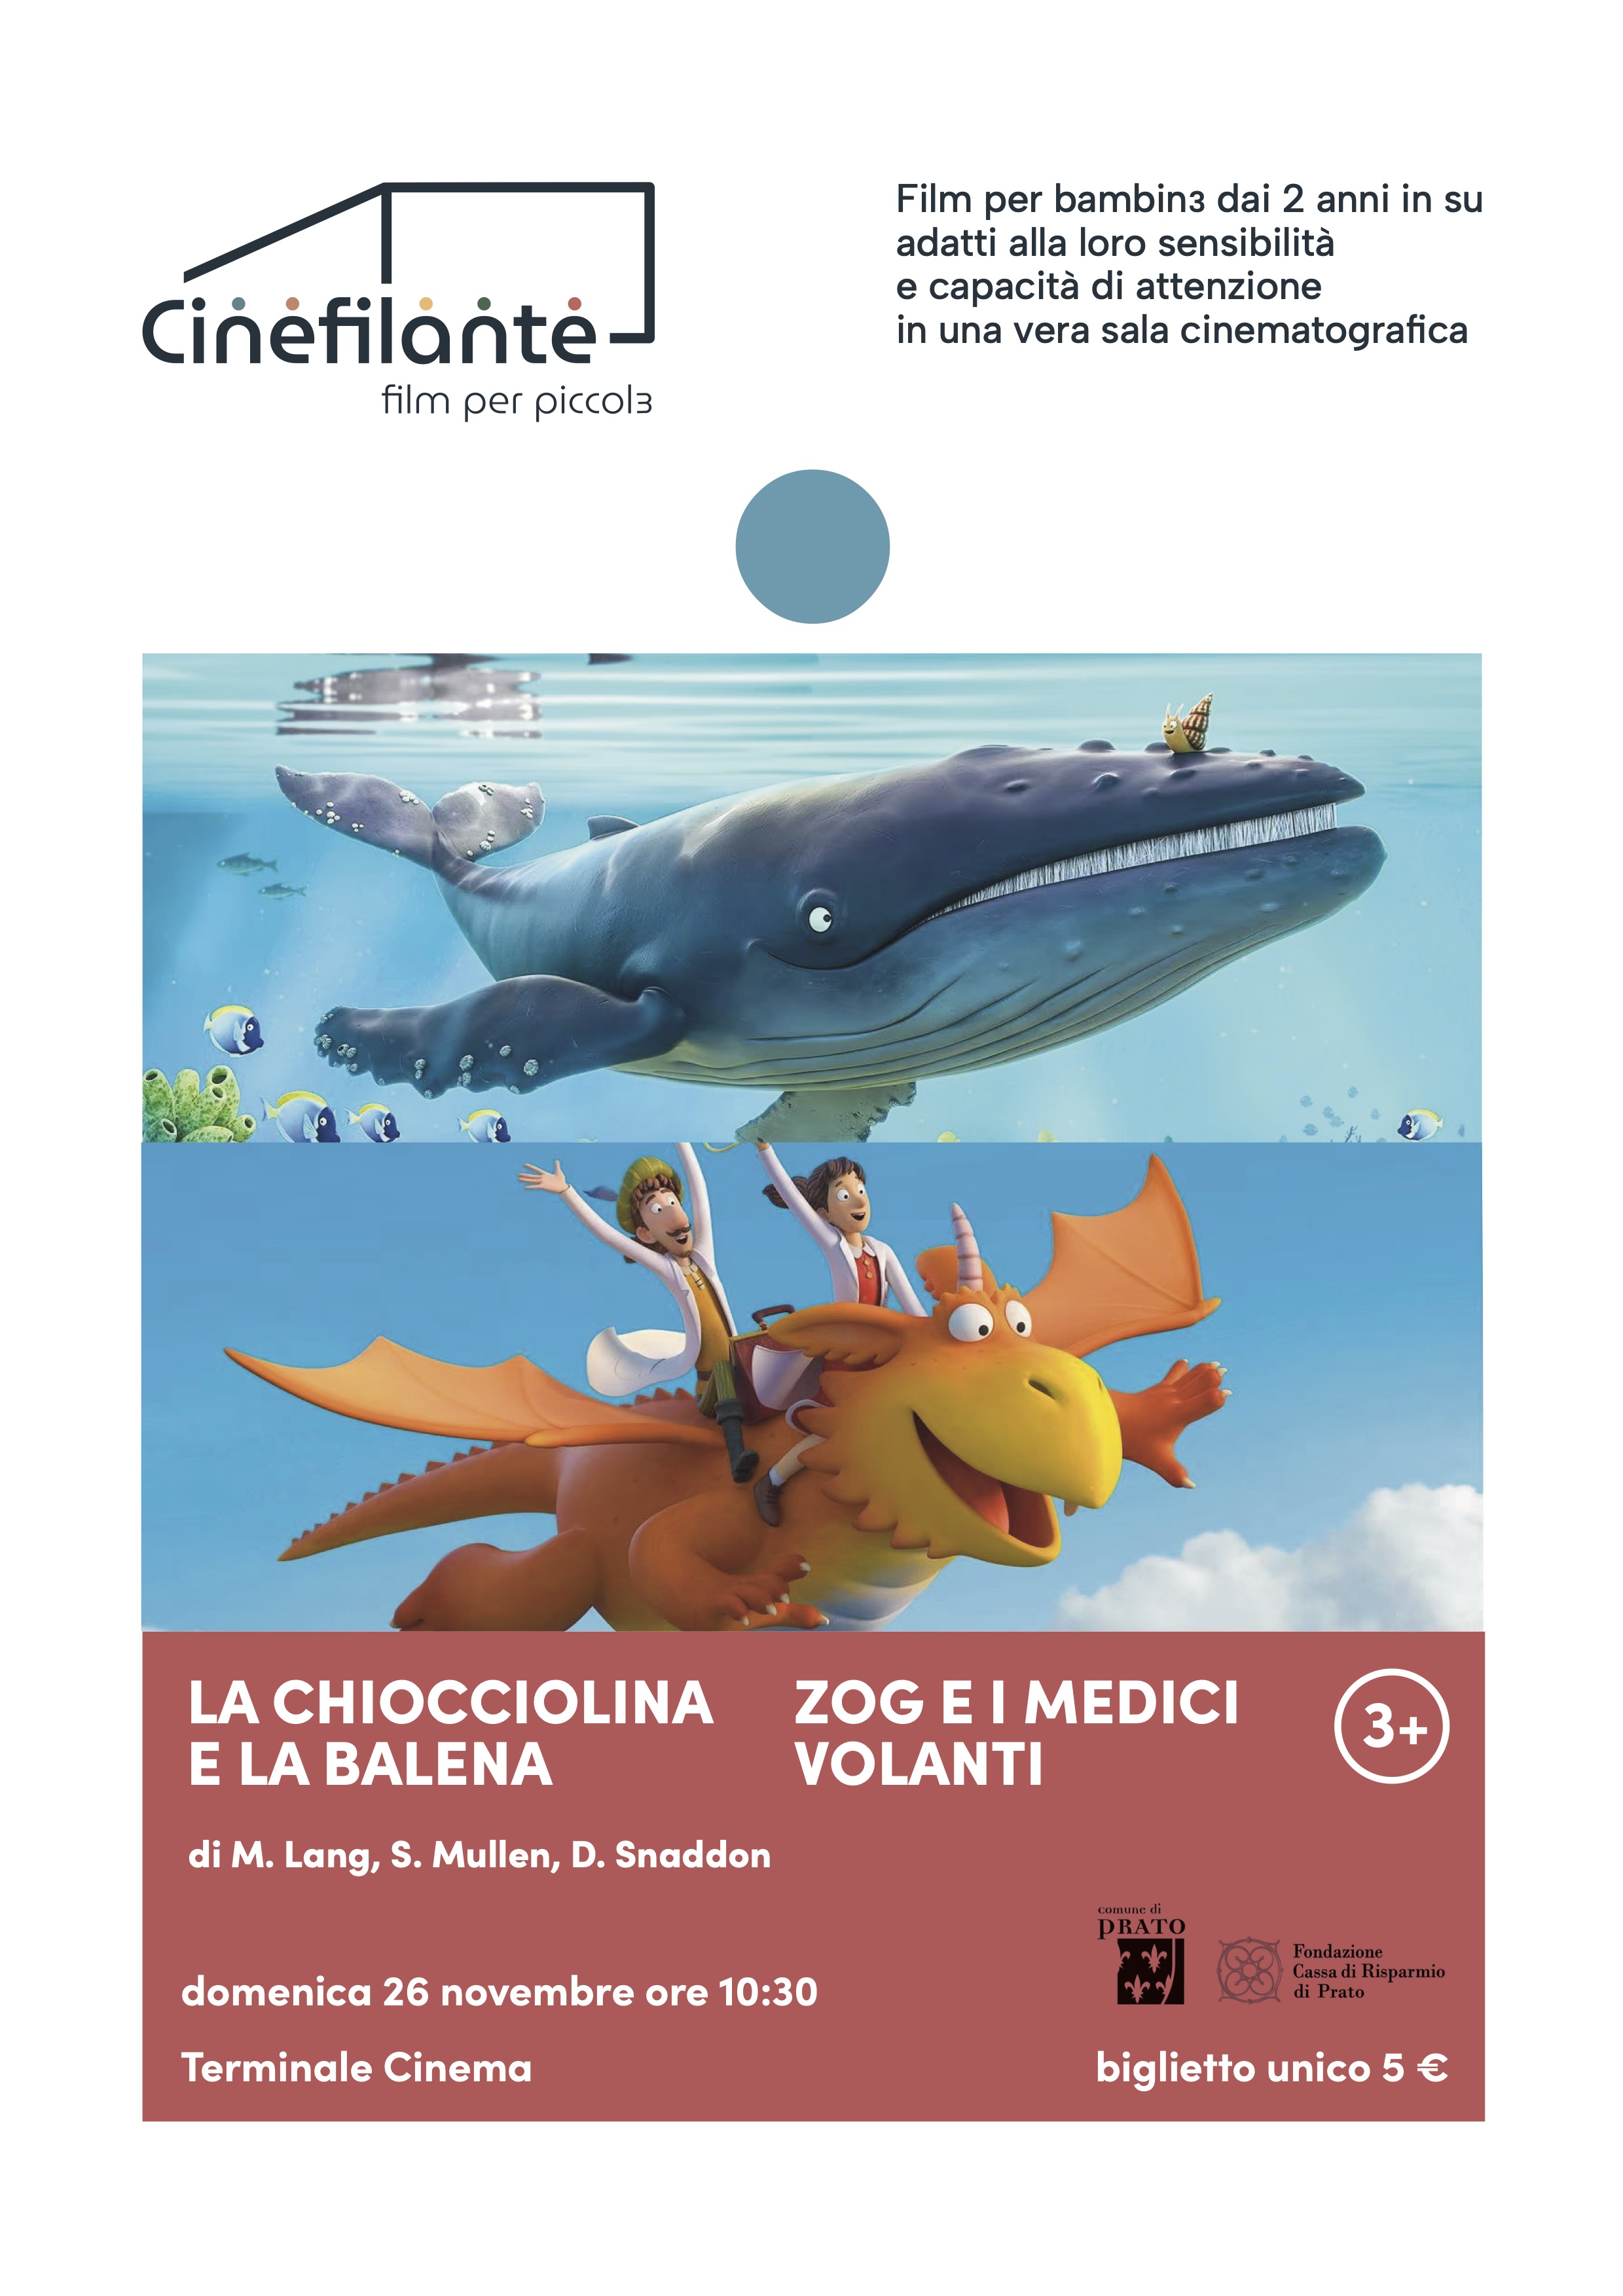 La chiocciolina e la balena - Zog e i medici volanti - Il Cinema